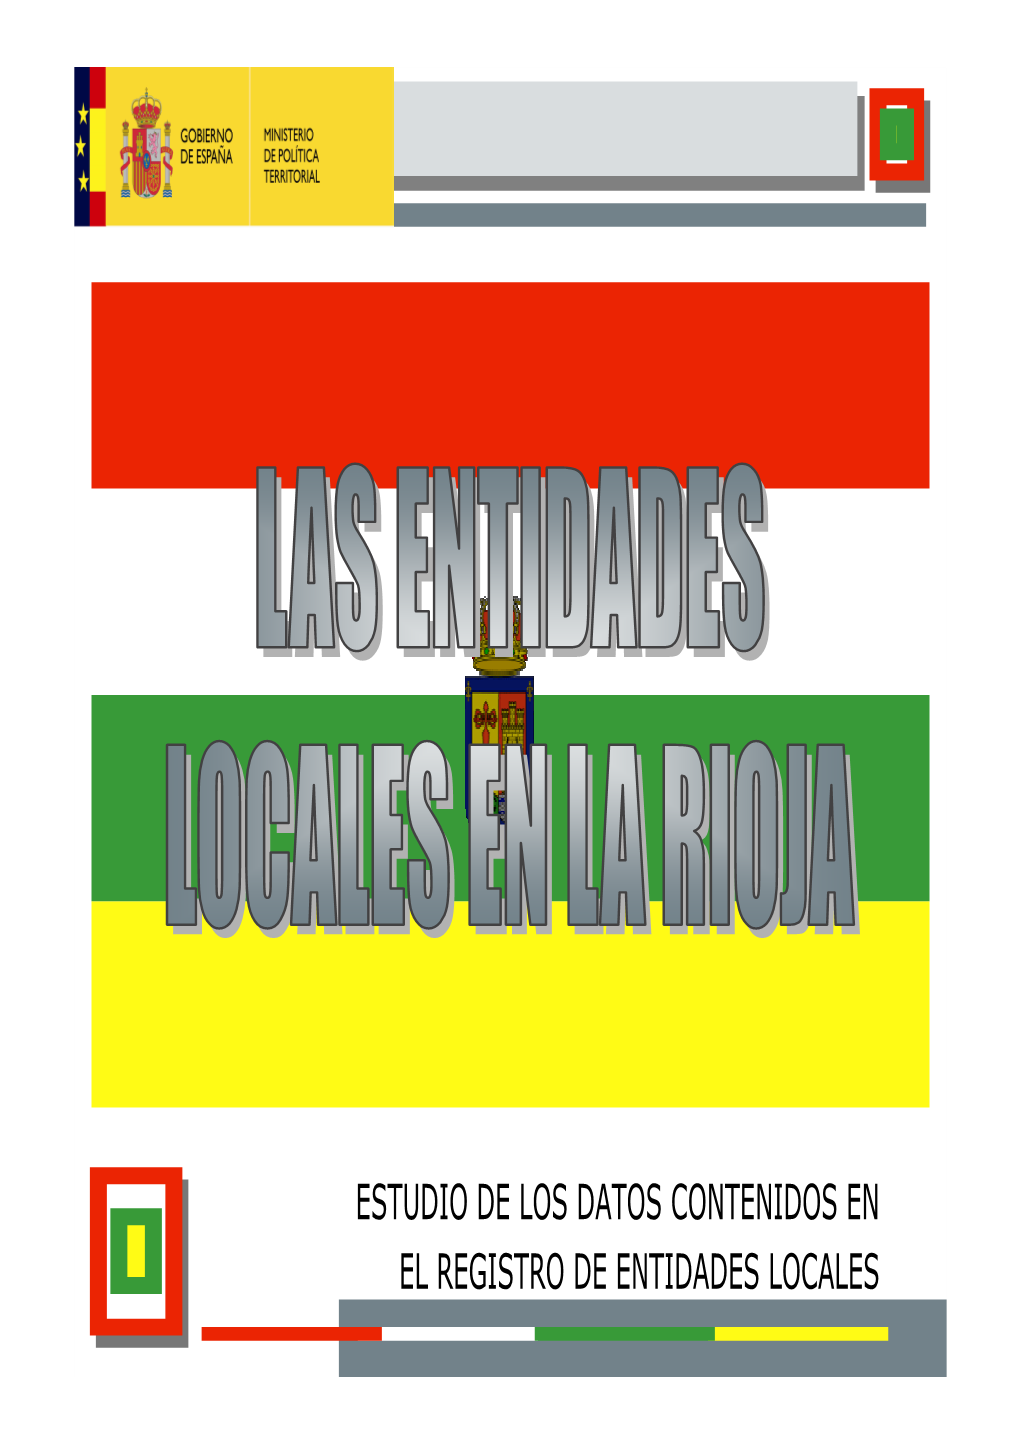 LAS ENTIDADES LOCALES EN RIOJA (Version 2)